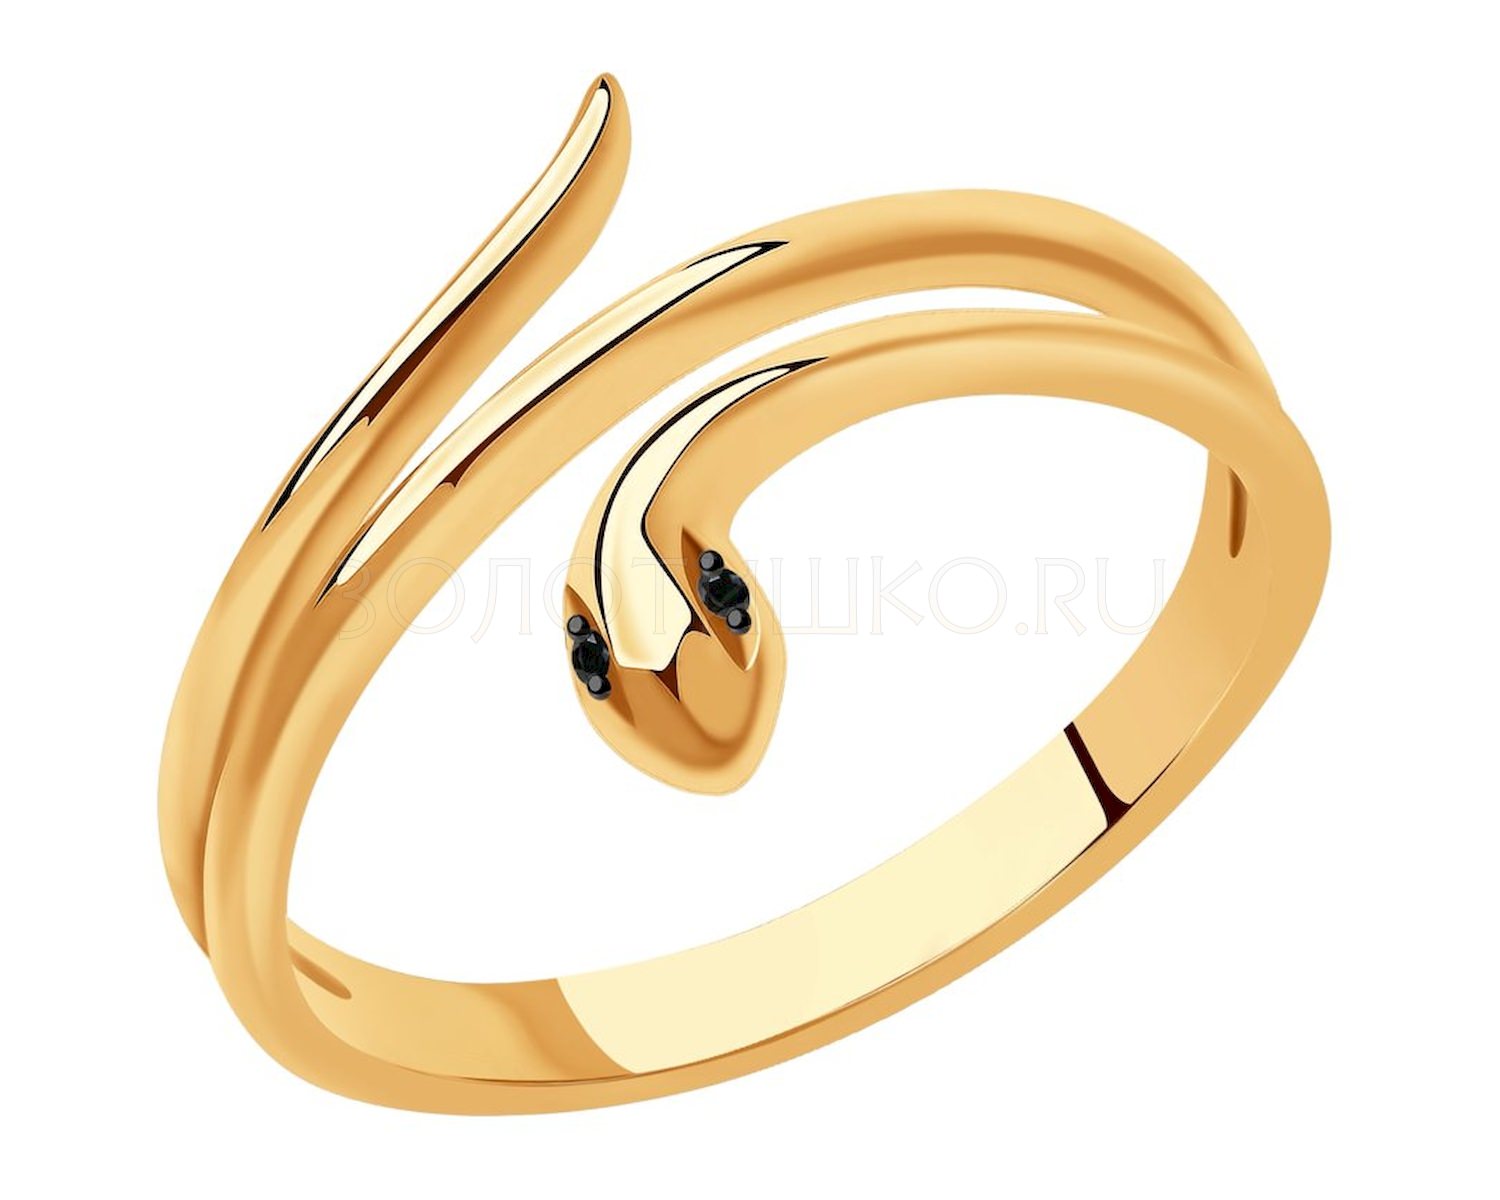 Золотые кольца чебоксары. Золотое кольцо змея SOKOLOV 7010068 S. Золотое кольцо змейка 585. Кольцо змейка золото 585 проба. Кольцо змейка, золото 585.